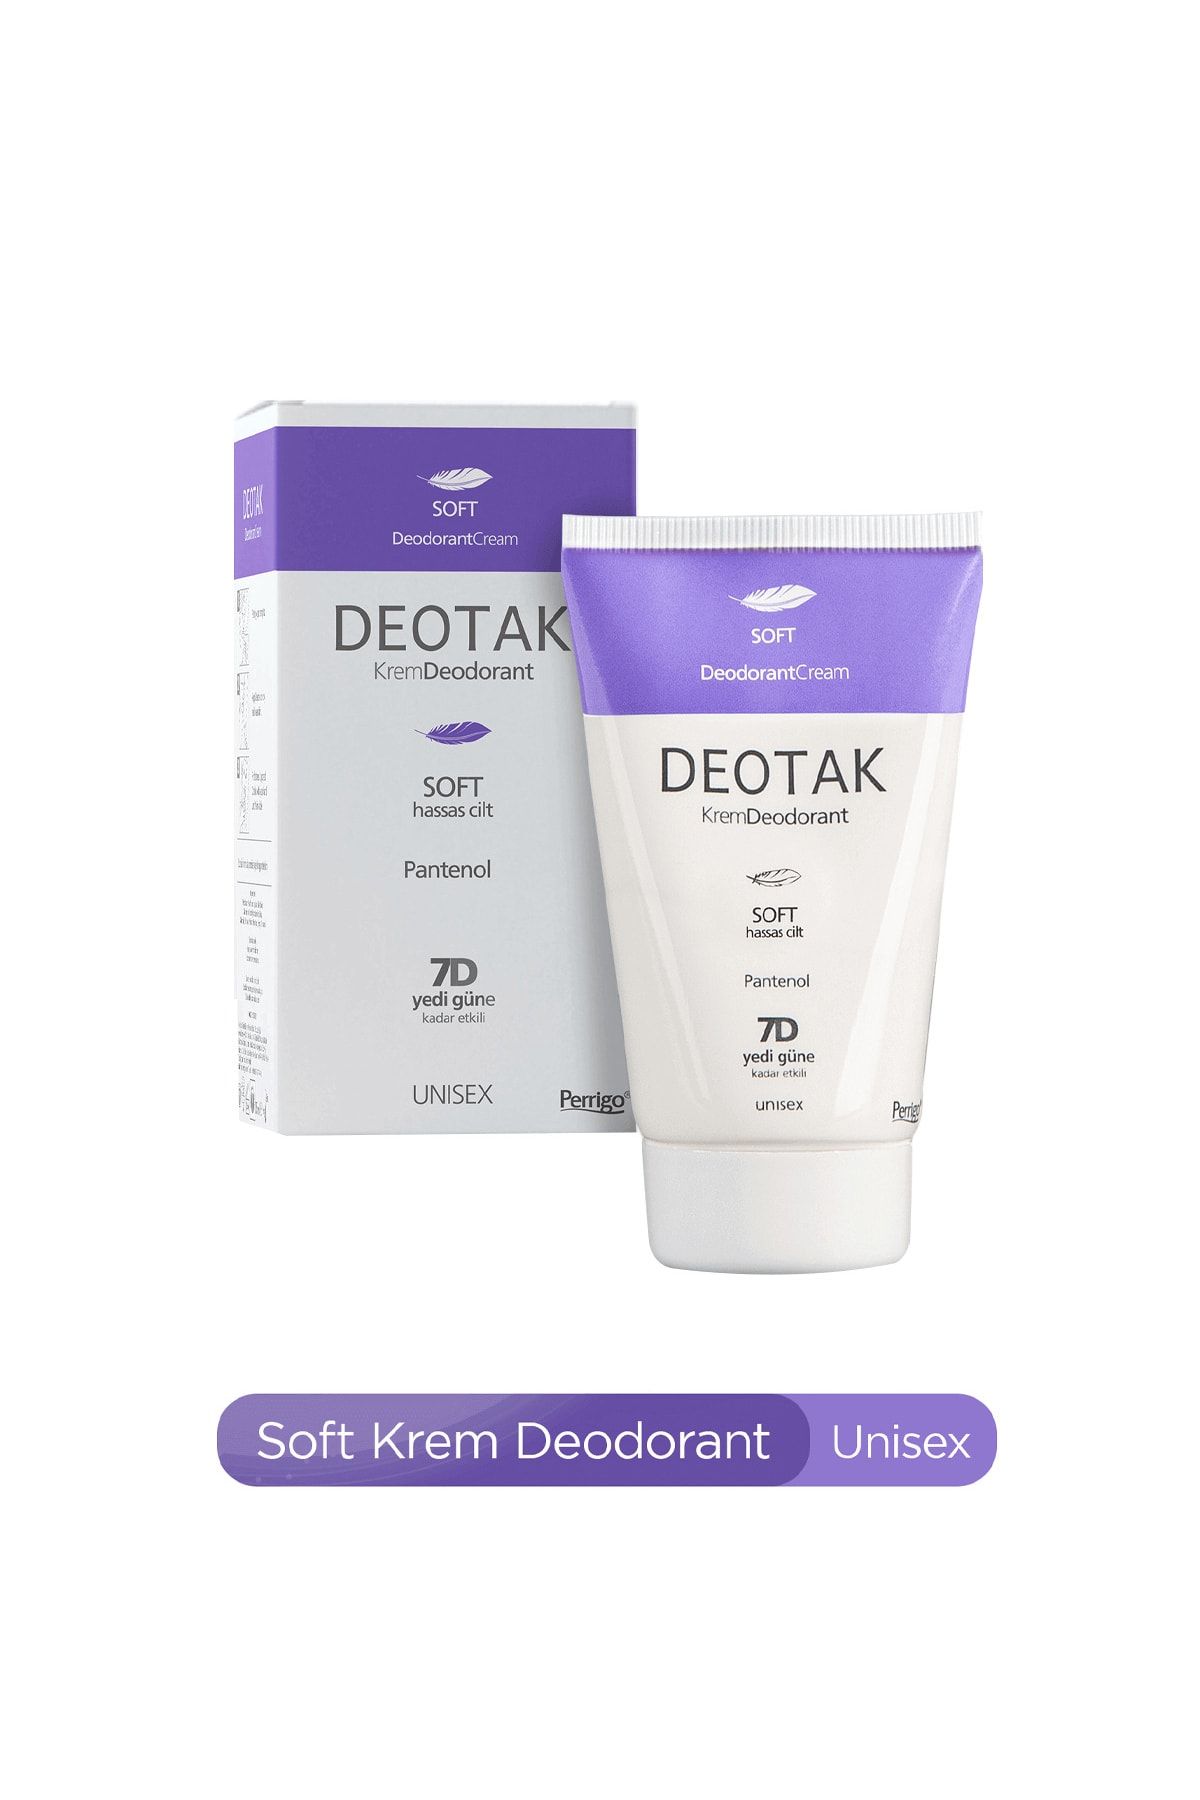 Deotak Soft Krem Deodorant 35 Ml